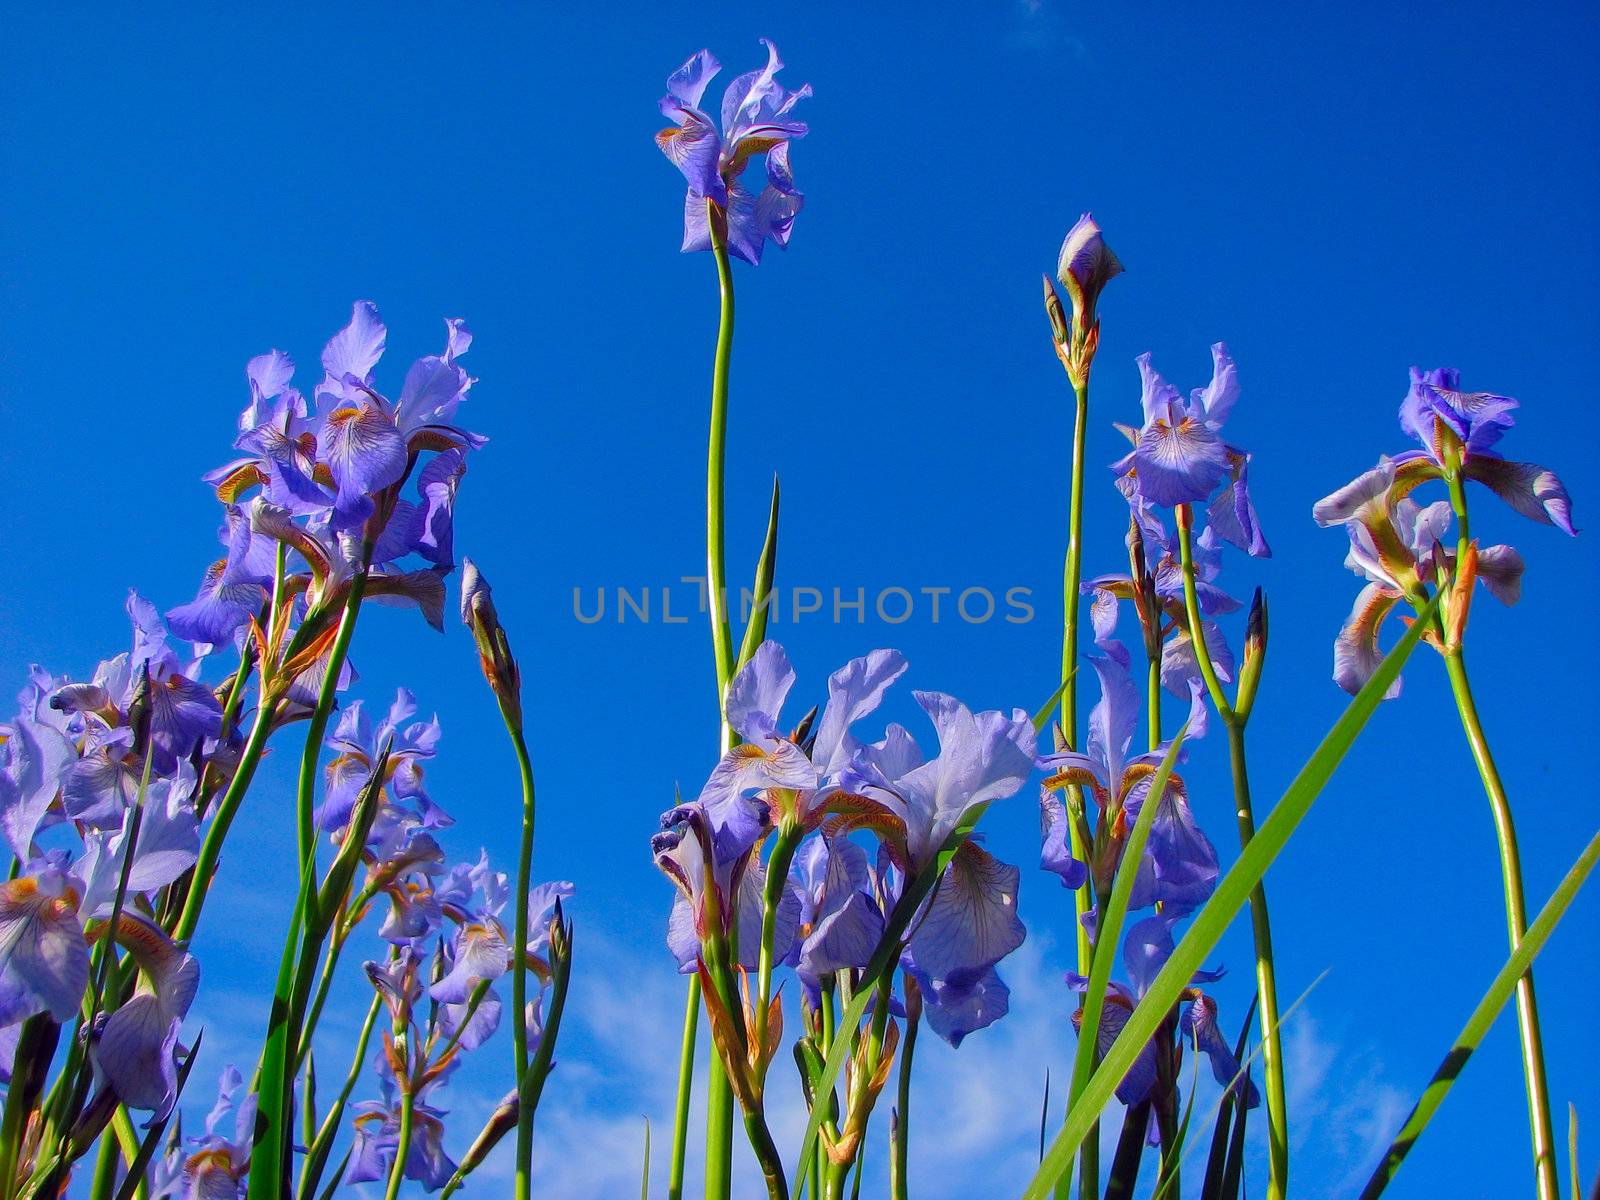 blue iris and sky by vadimone